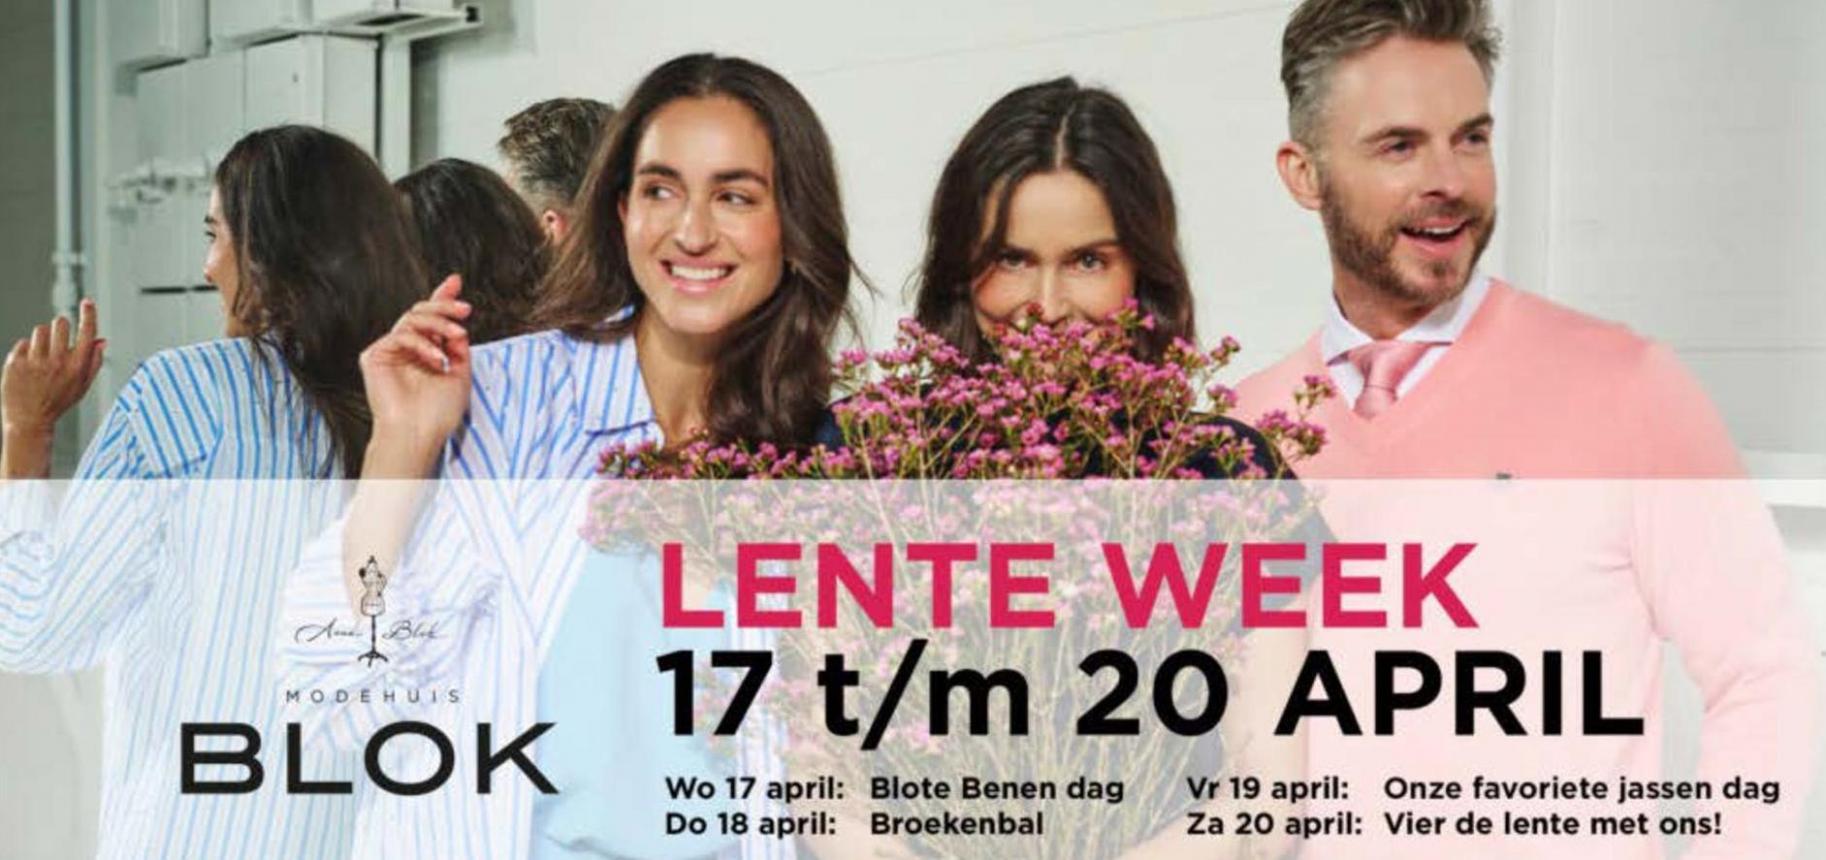 Lente Week. Modehuis Blok. Week 13 (2024-04-20-2024-04-20)